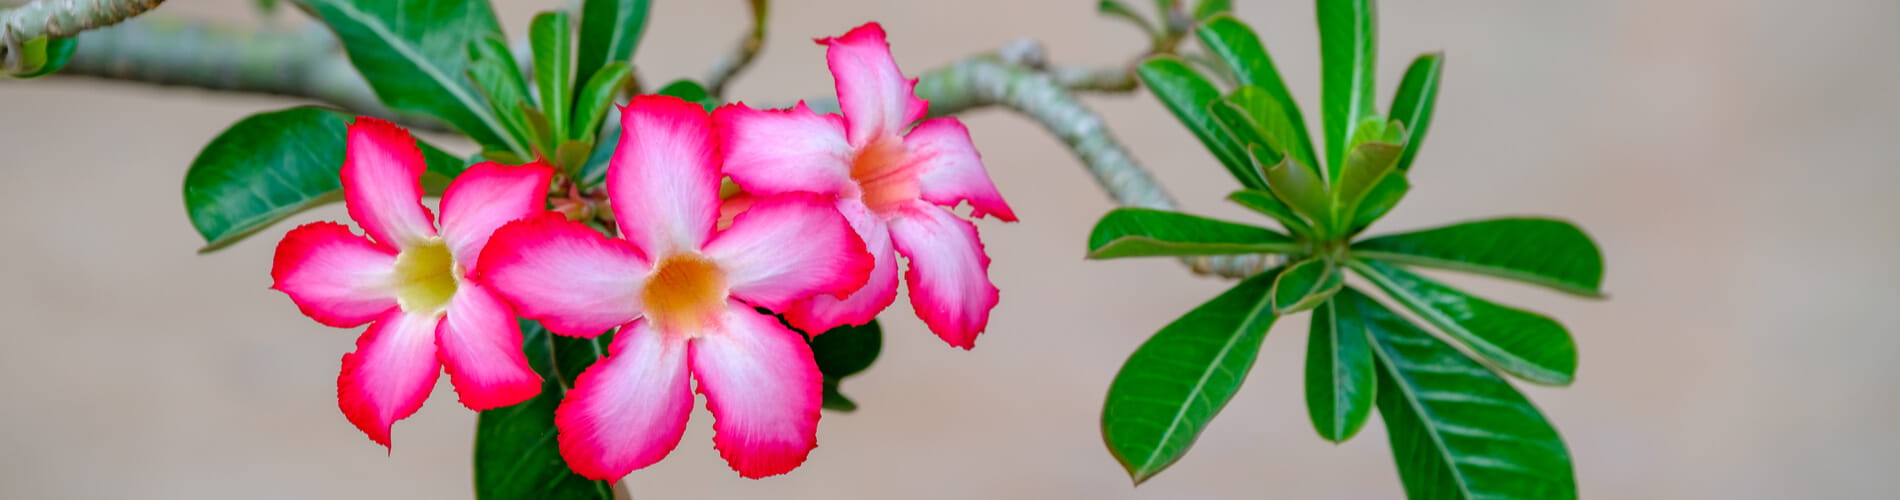 Wüstenrose: exotische und robuste Blütenpracht